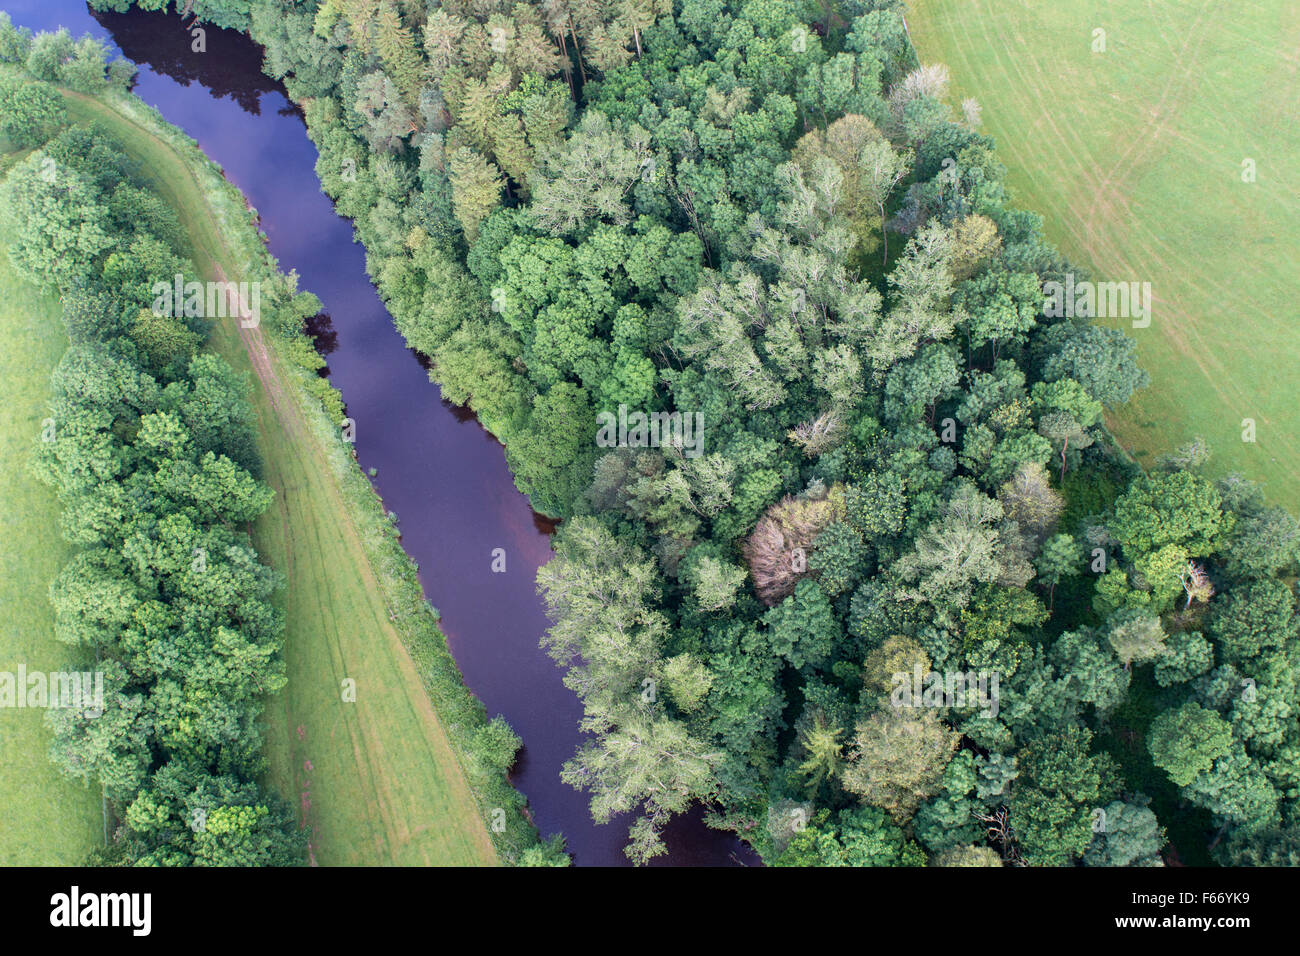 Río Eden, bordeada por bosques nativos, serpenteando a través de la campiña cerca de Appleby, Cumbria, Reino Unido. Foto de stock